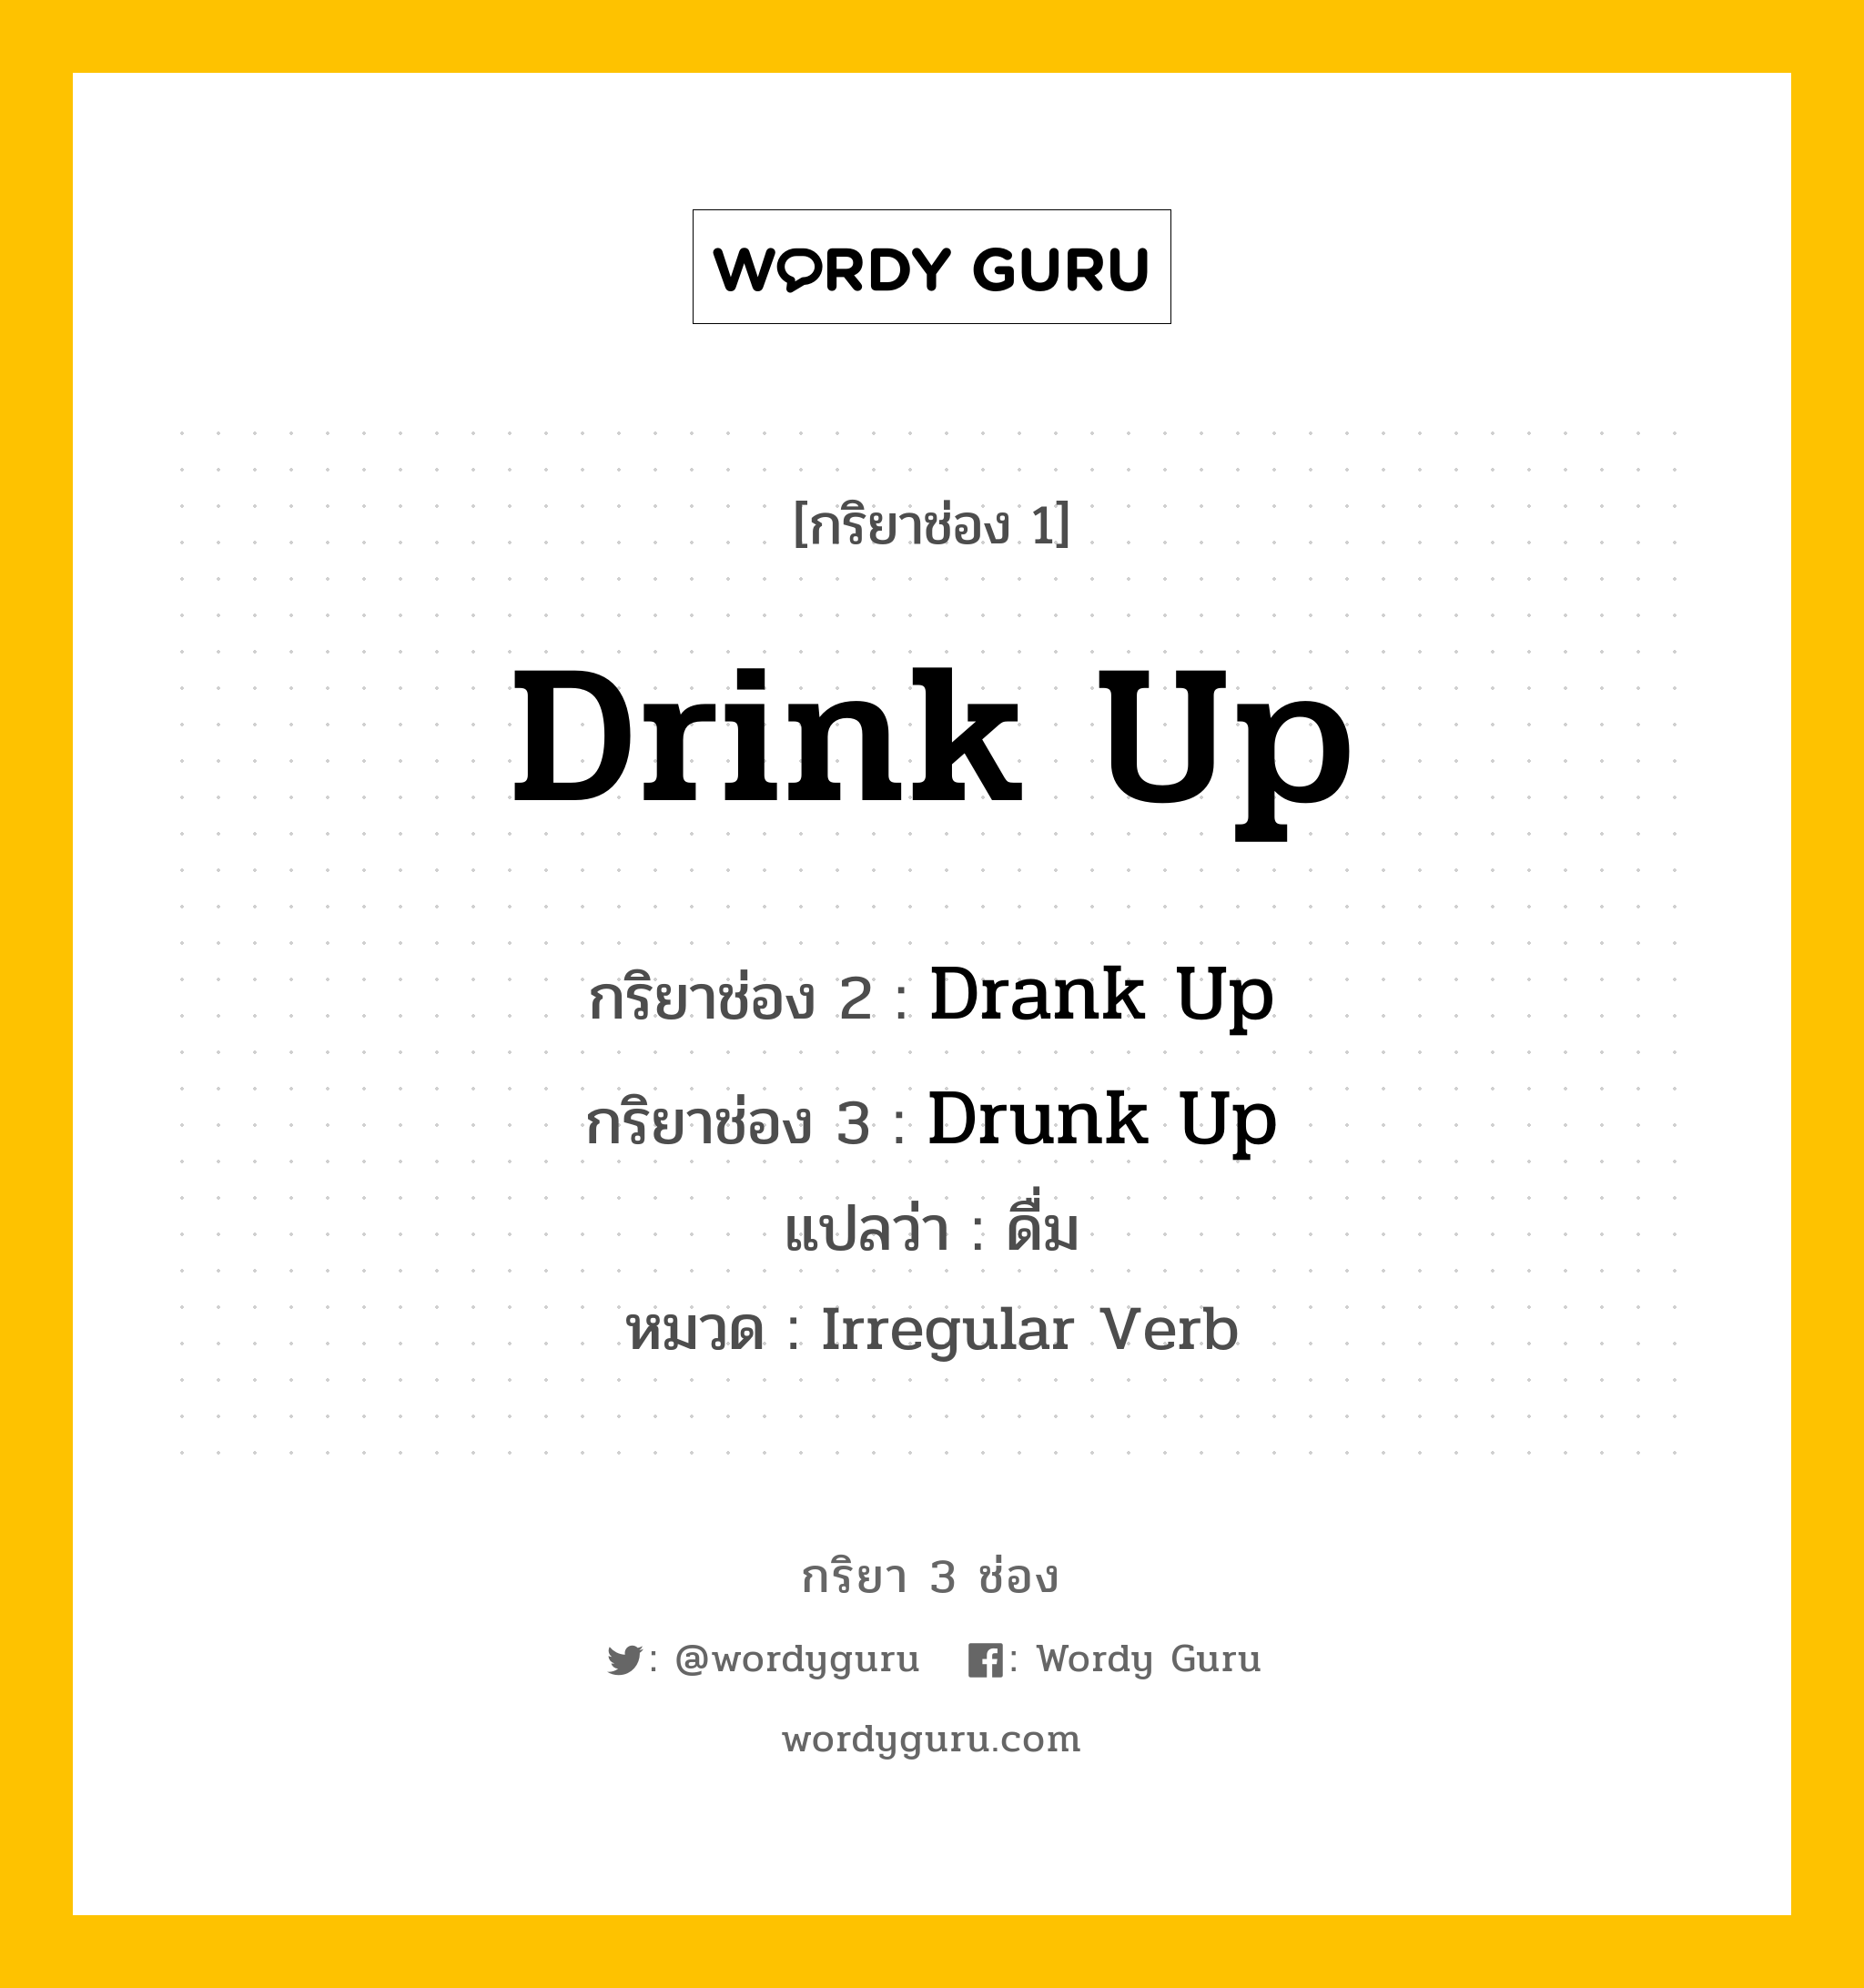 กริยา 3 ช่อง: Drink Up ช่อง 2 Drink Up ช่อง 3 คืออะไร, กริยาช่อง 1 Drink Up กริยาช่อง 2 Drank Up กริยาช่อง 3 Drunk Up แปลว่า ดื่ม หมวด Irregular Verb หมวด Irregular Verb